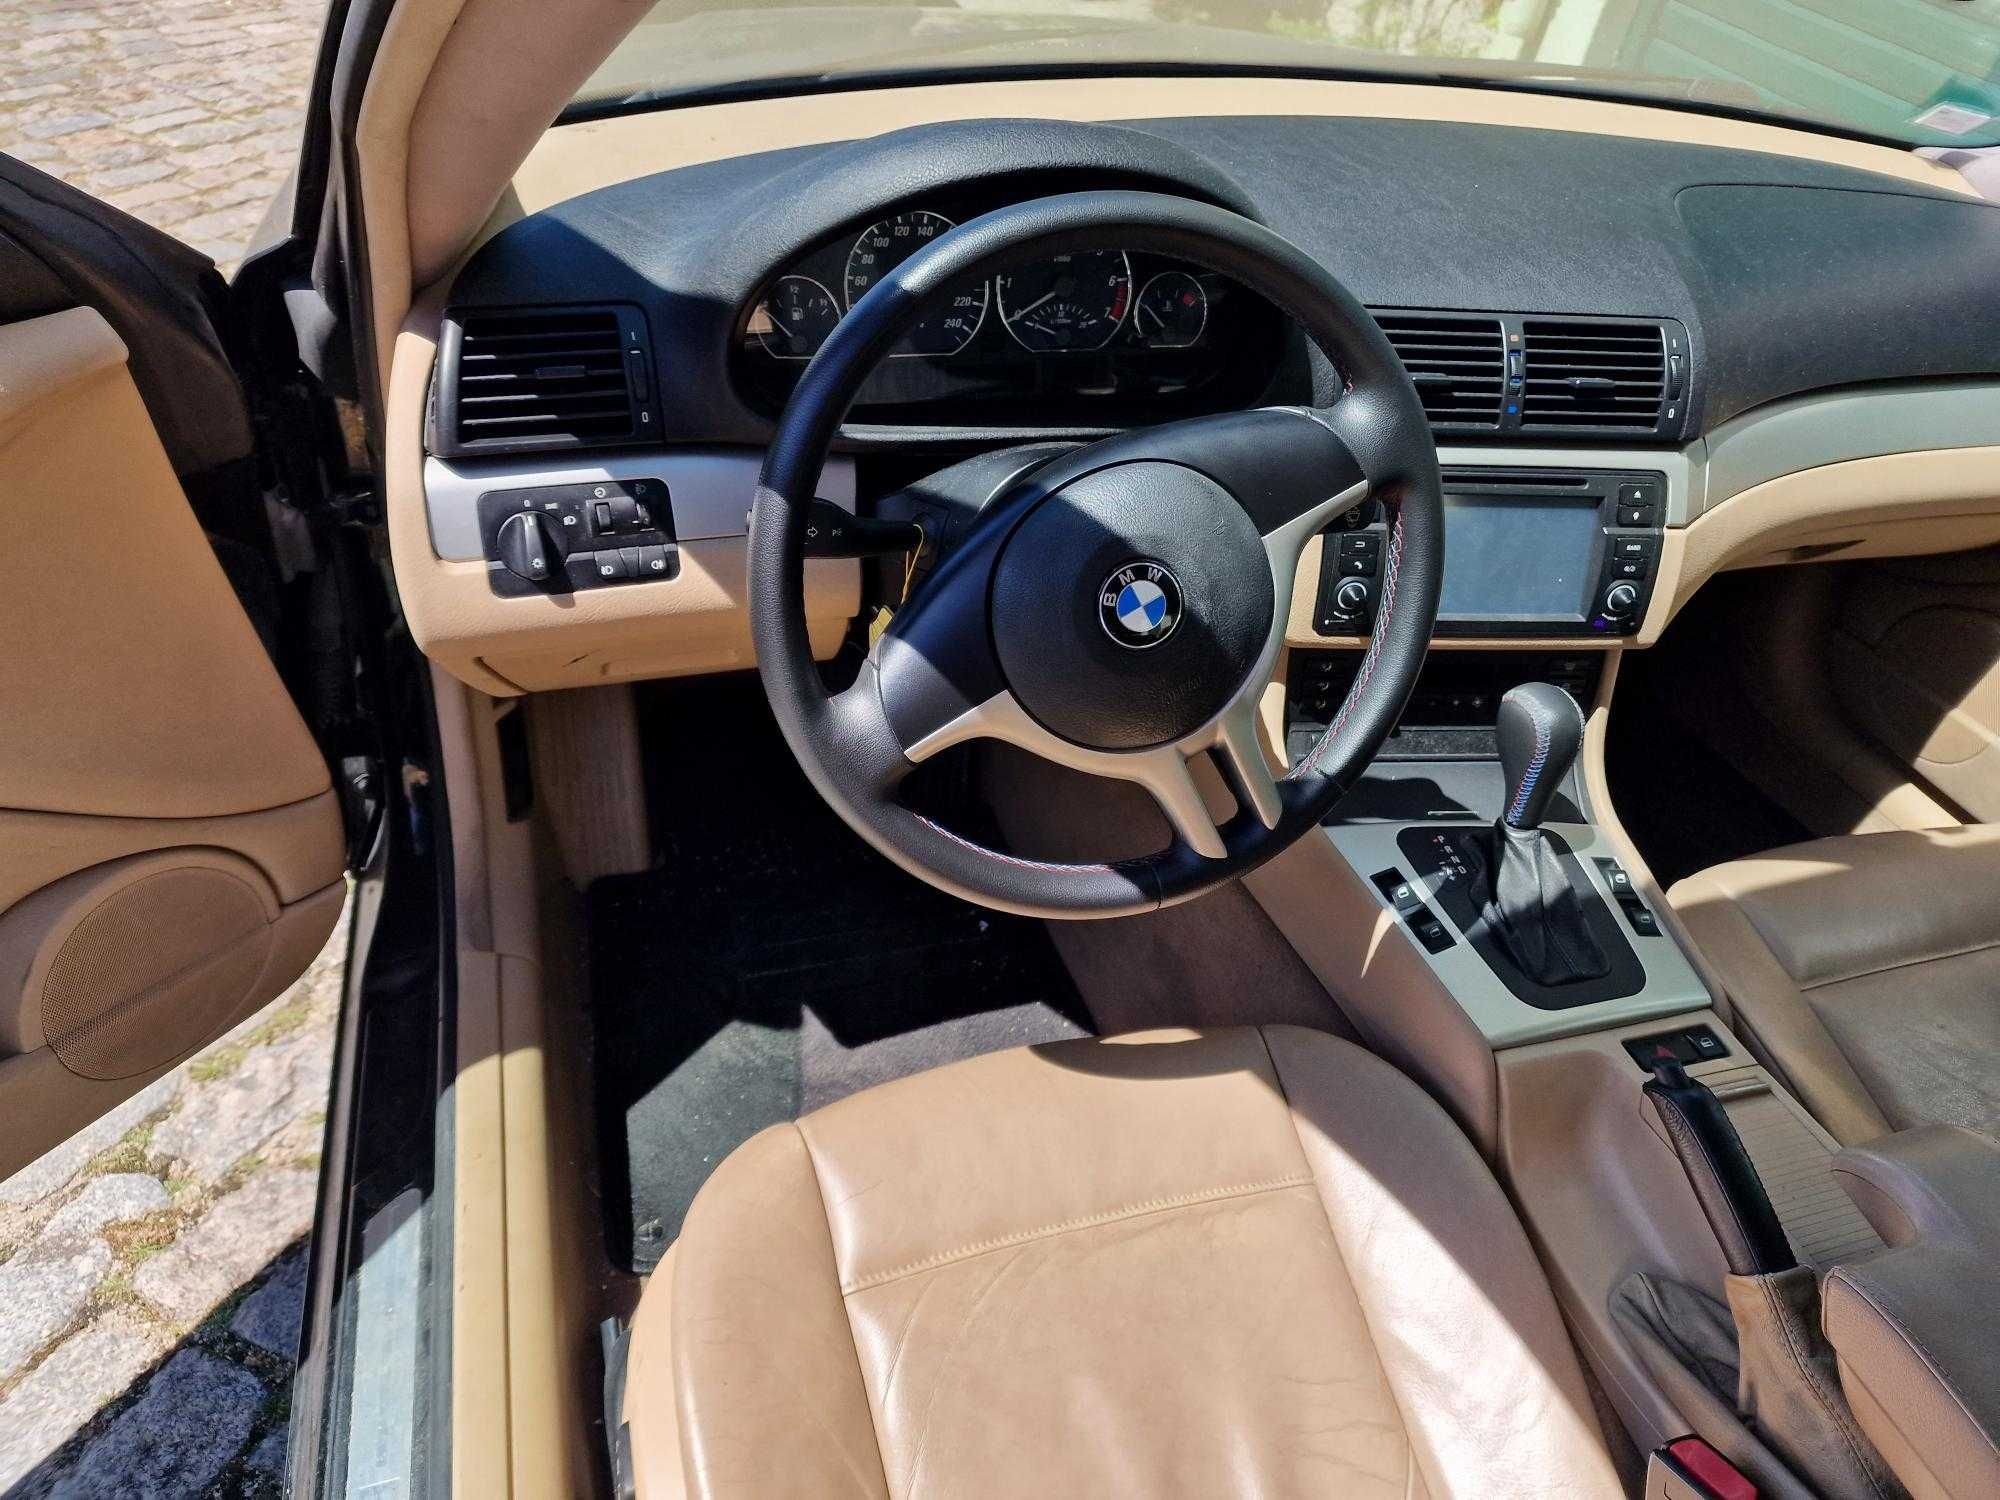 Vendo BMW 320 Ci em excelente estado